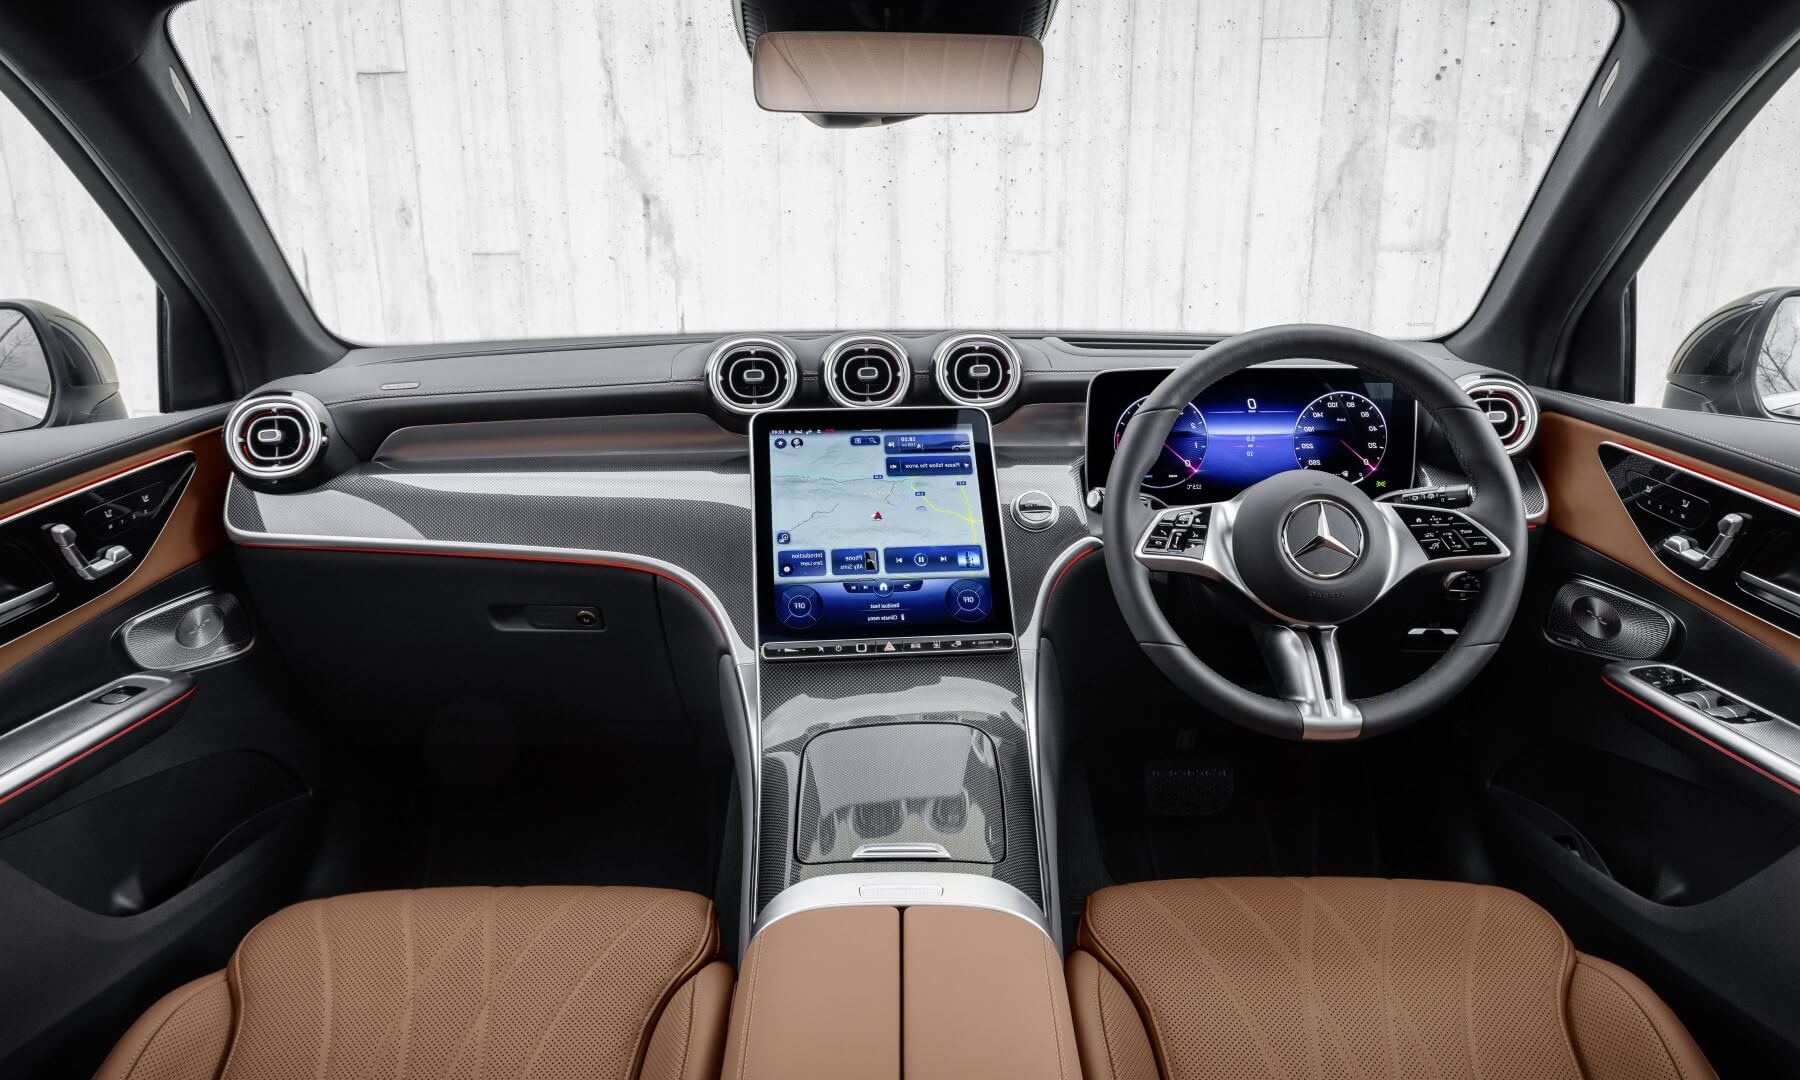 Mercedes-Benz GLC220d interior